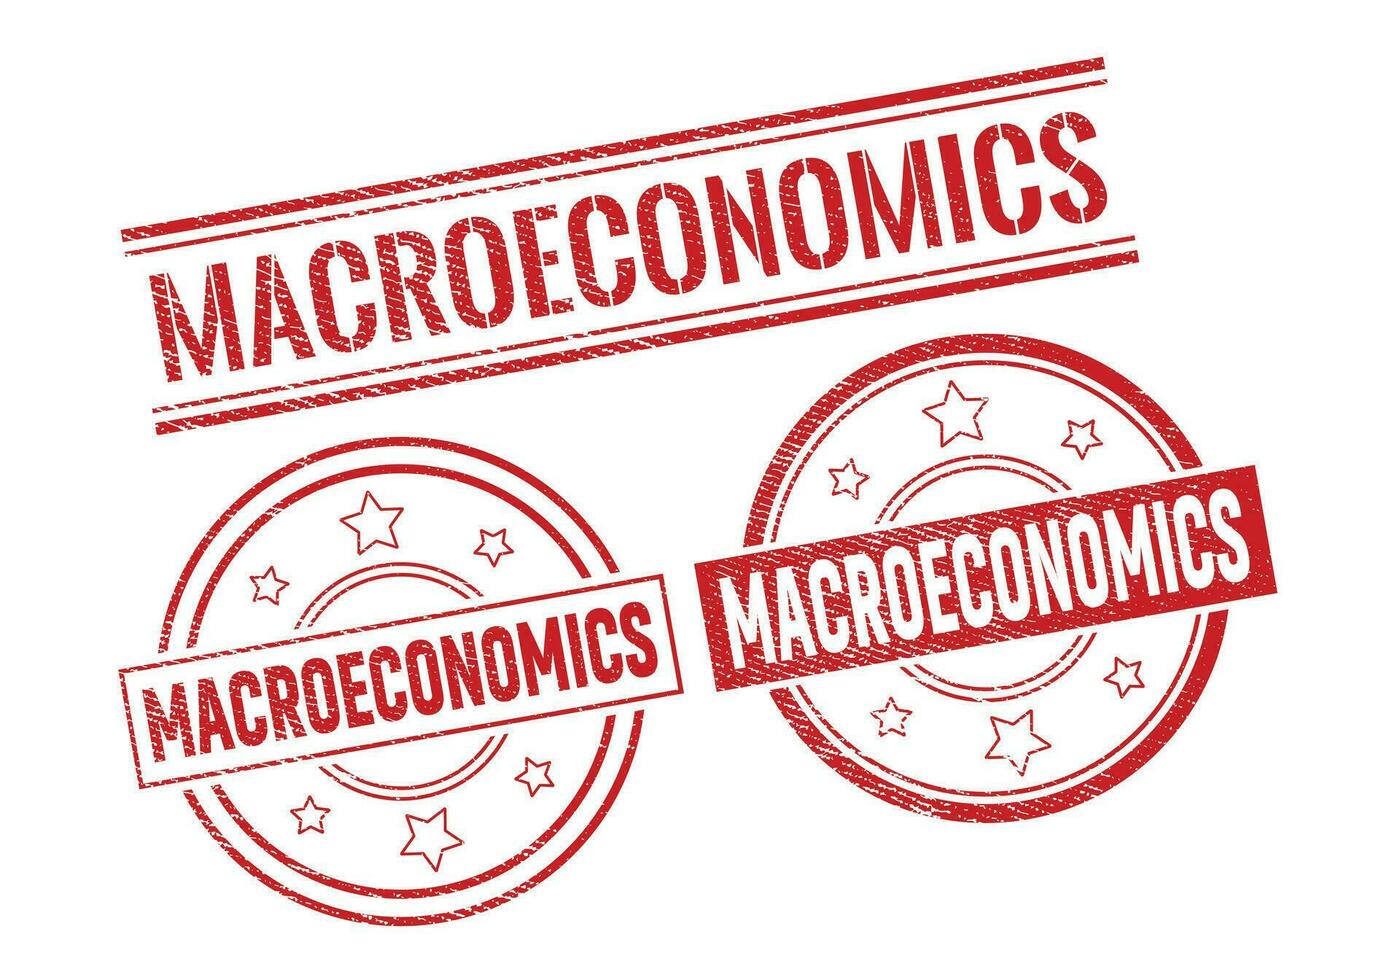 macro-economie rubber teken of stempel, grunge rubber stempel, uitverkoop insigne wijnoogst oud structuur vector